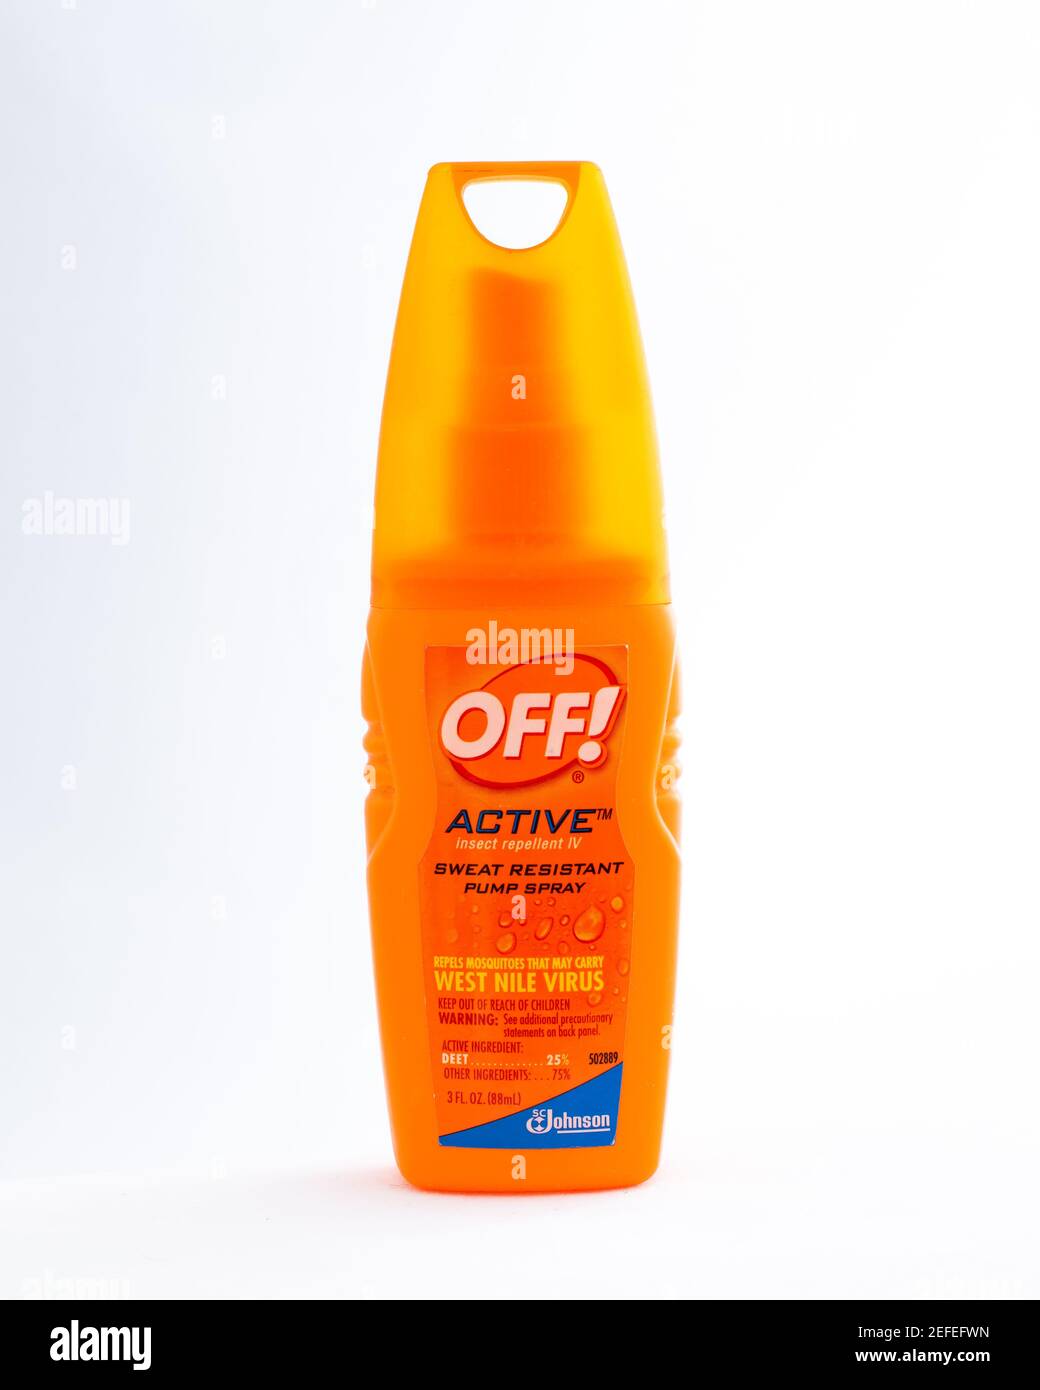 Una bottiglia spray arancione di plastica della pompa di Johnson Off!, un repellente per insetti resistente al sudore attivo per respingere le zanzare e altri bug pesky Foto Stock